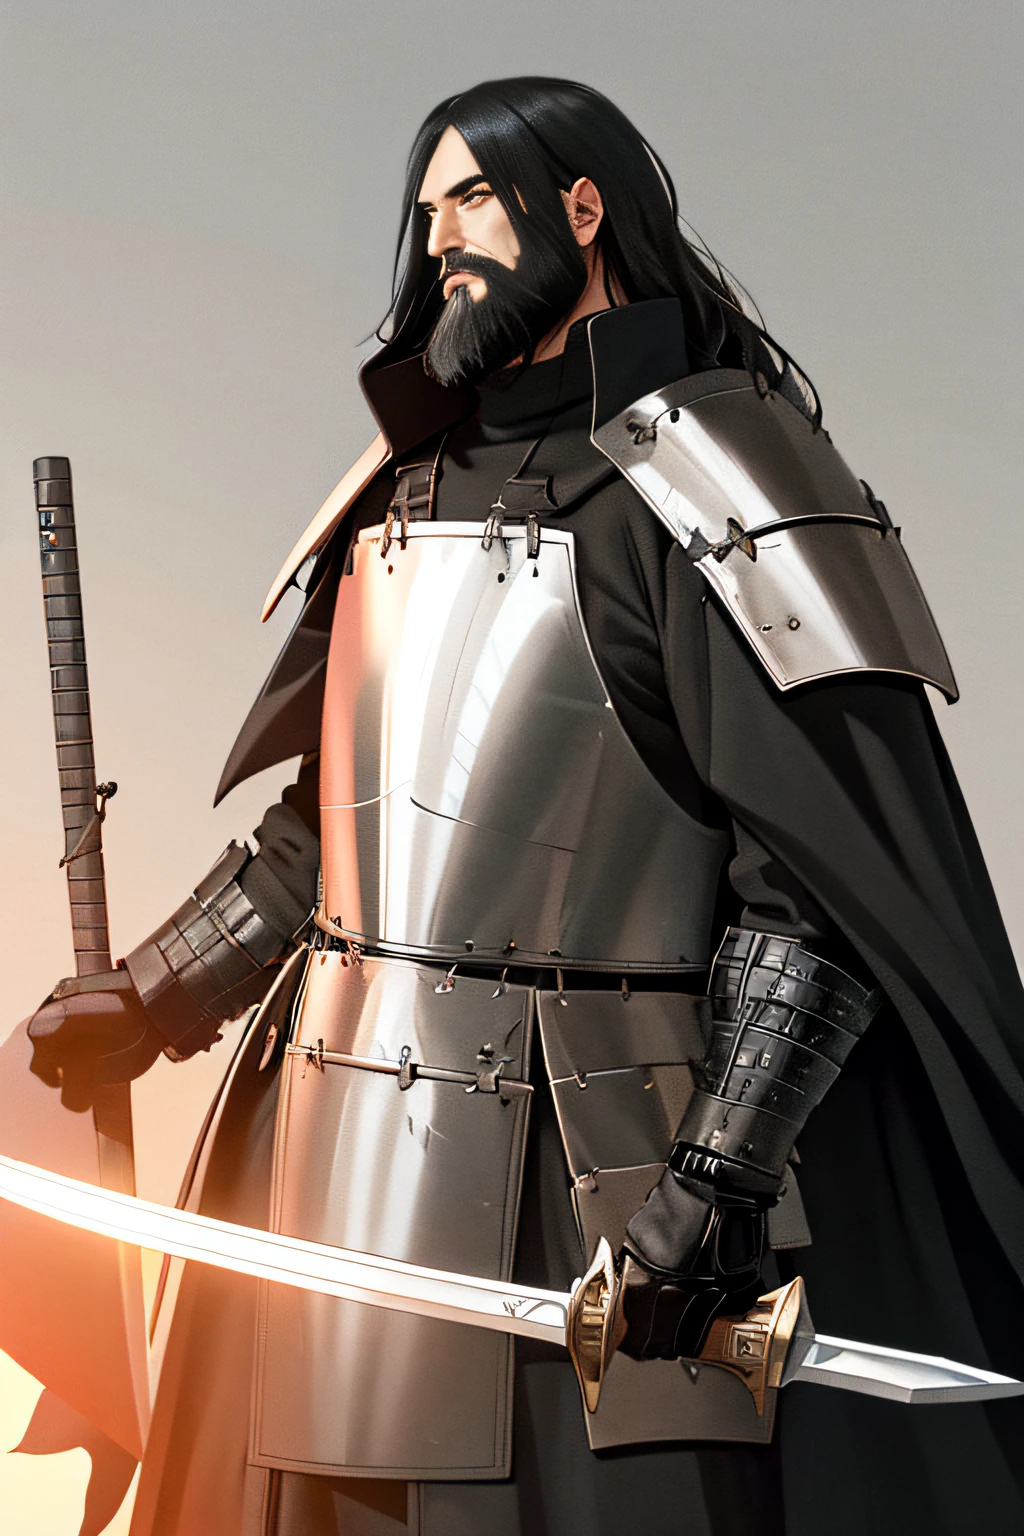 Humano de grande porte, longos cabelos pretos e barba, Armadura de placas pesadas, longo manto preto, espada de duas mãos